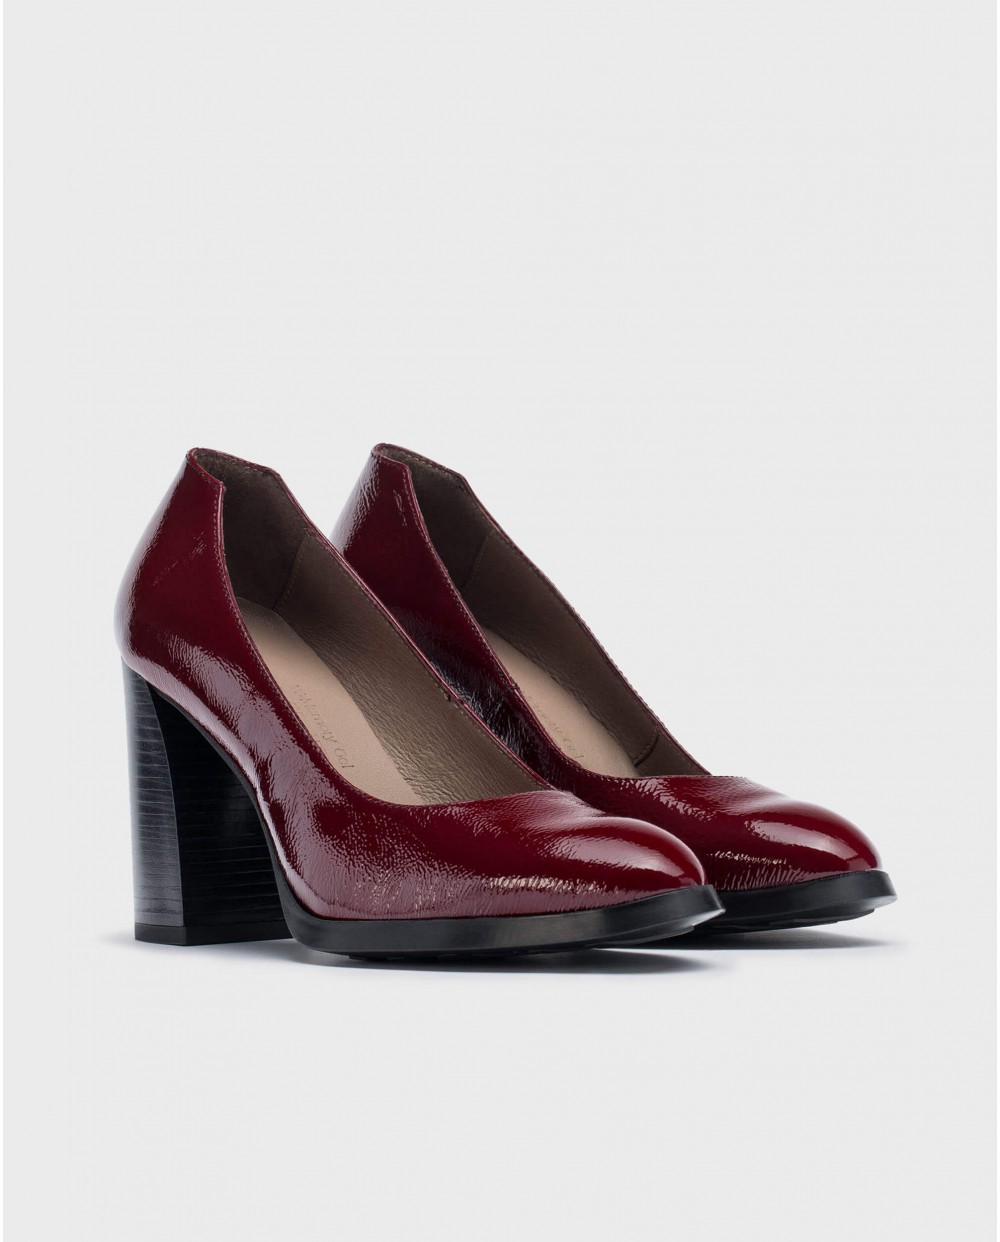 Wonders-Heels-Burgundy TINI shoe